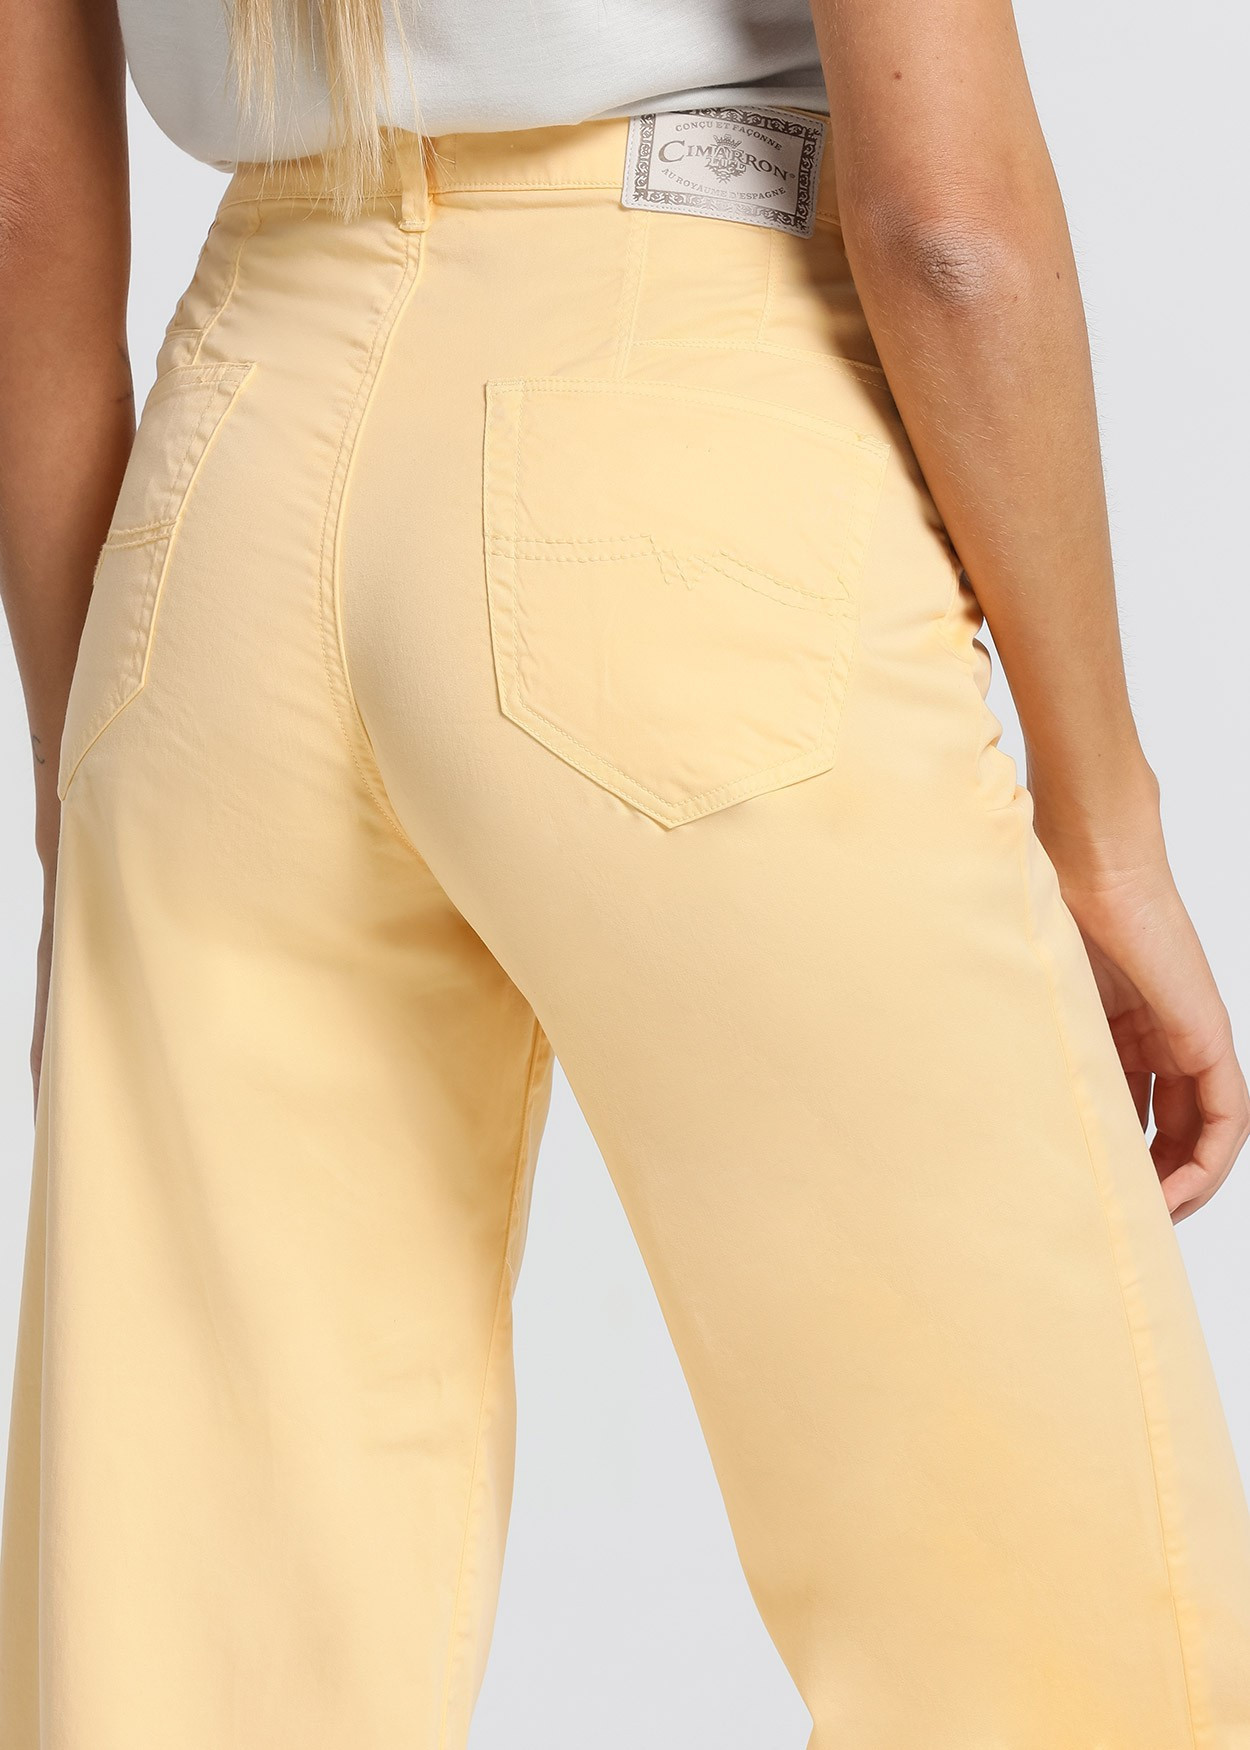 Jeans Aurora-Pêche Satin | Taille naturelle - Coupe droite large-court | Taille en pouces Cimarron